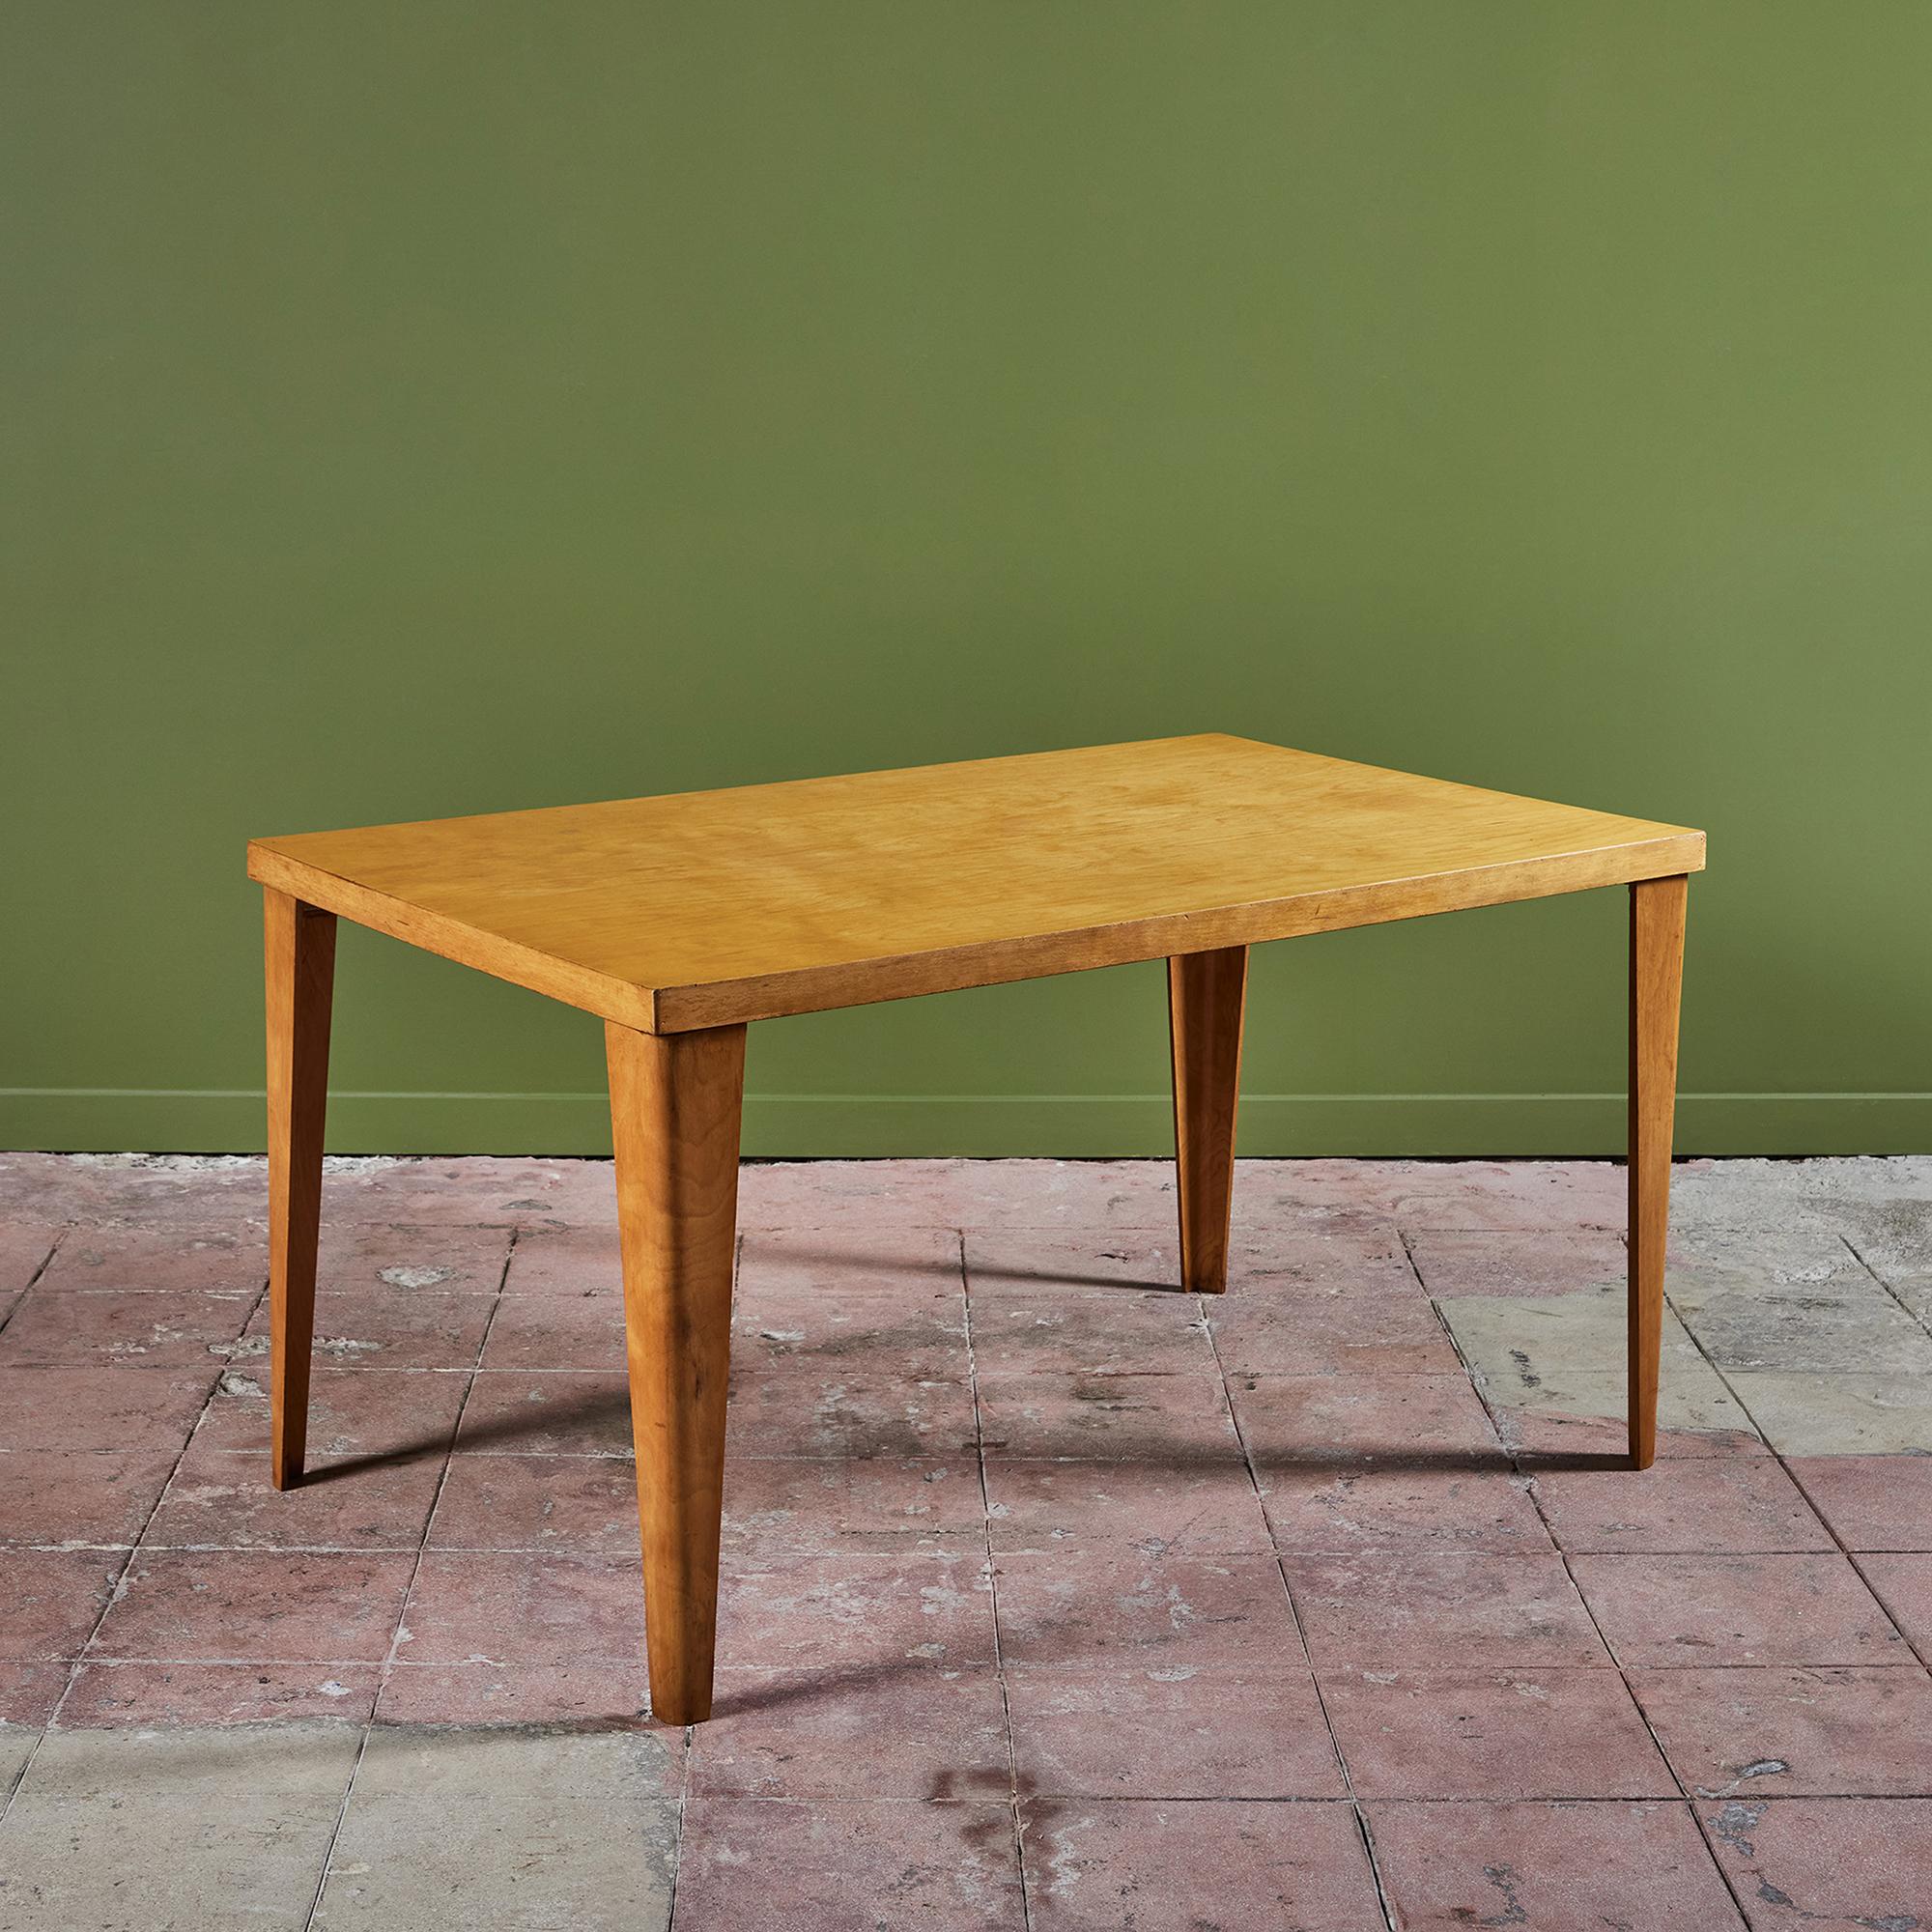 Seltener früher rechteckiger Esstisch aus gebogenem Ahornsperrholz, entworfen von Ray und Charles Eames und hergestellt von der Evans Plywood Division für Herman Miller. Dieses Exemplar mit der Bezeichnung DTW-1 (Dining Table Wood